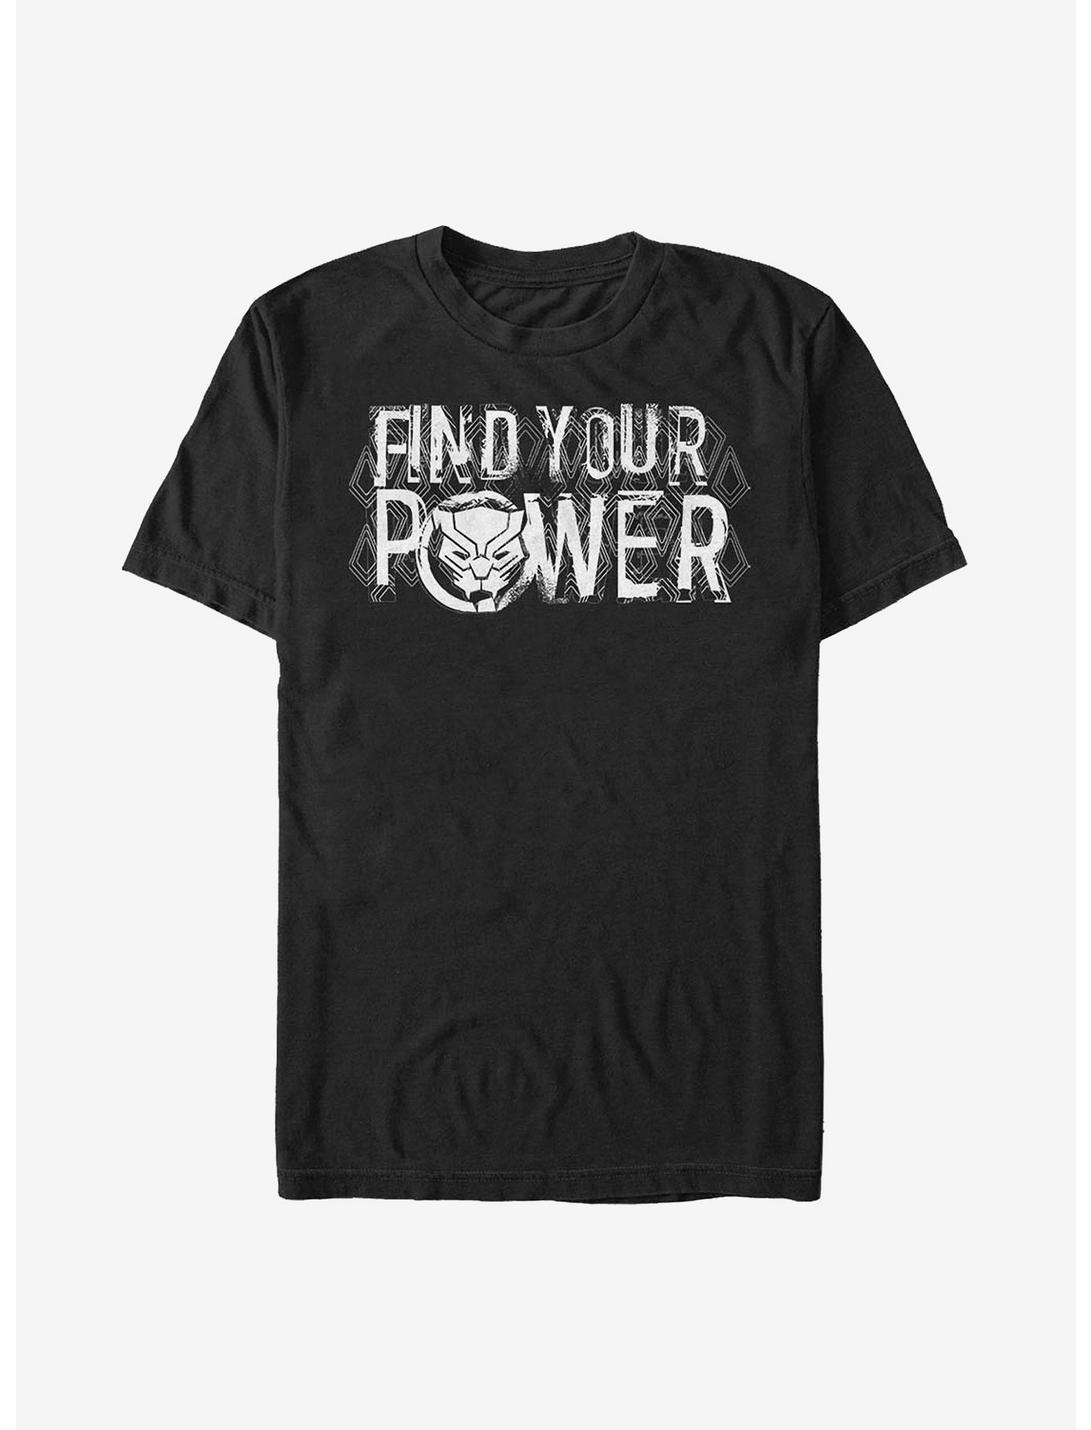 Marvel Black Panther Power T-Shirt, BLACK, hi-res